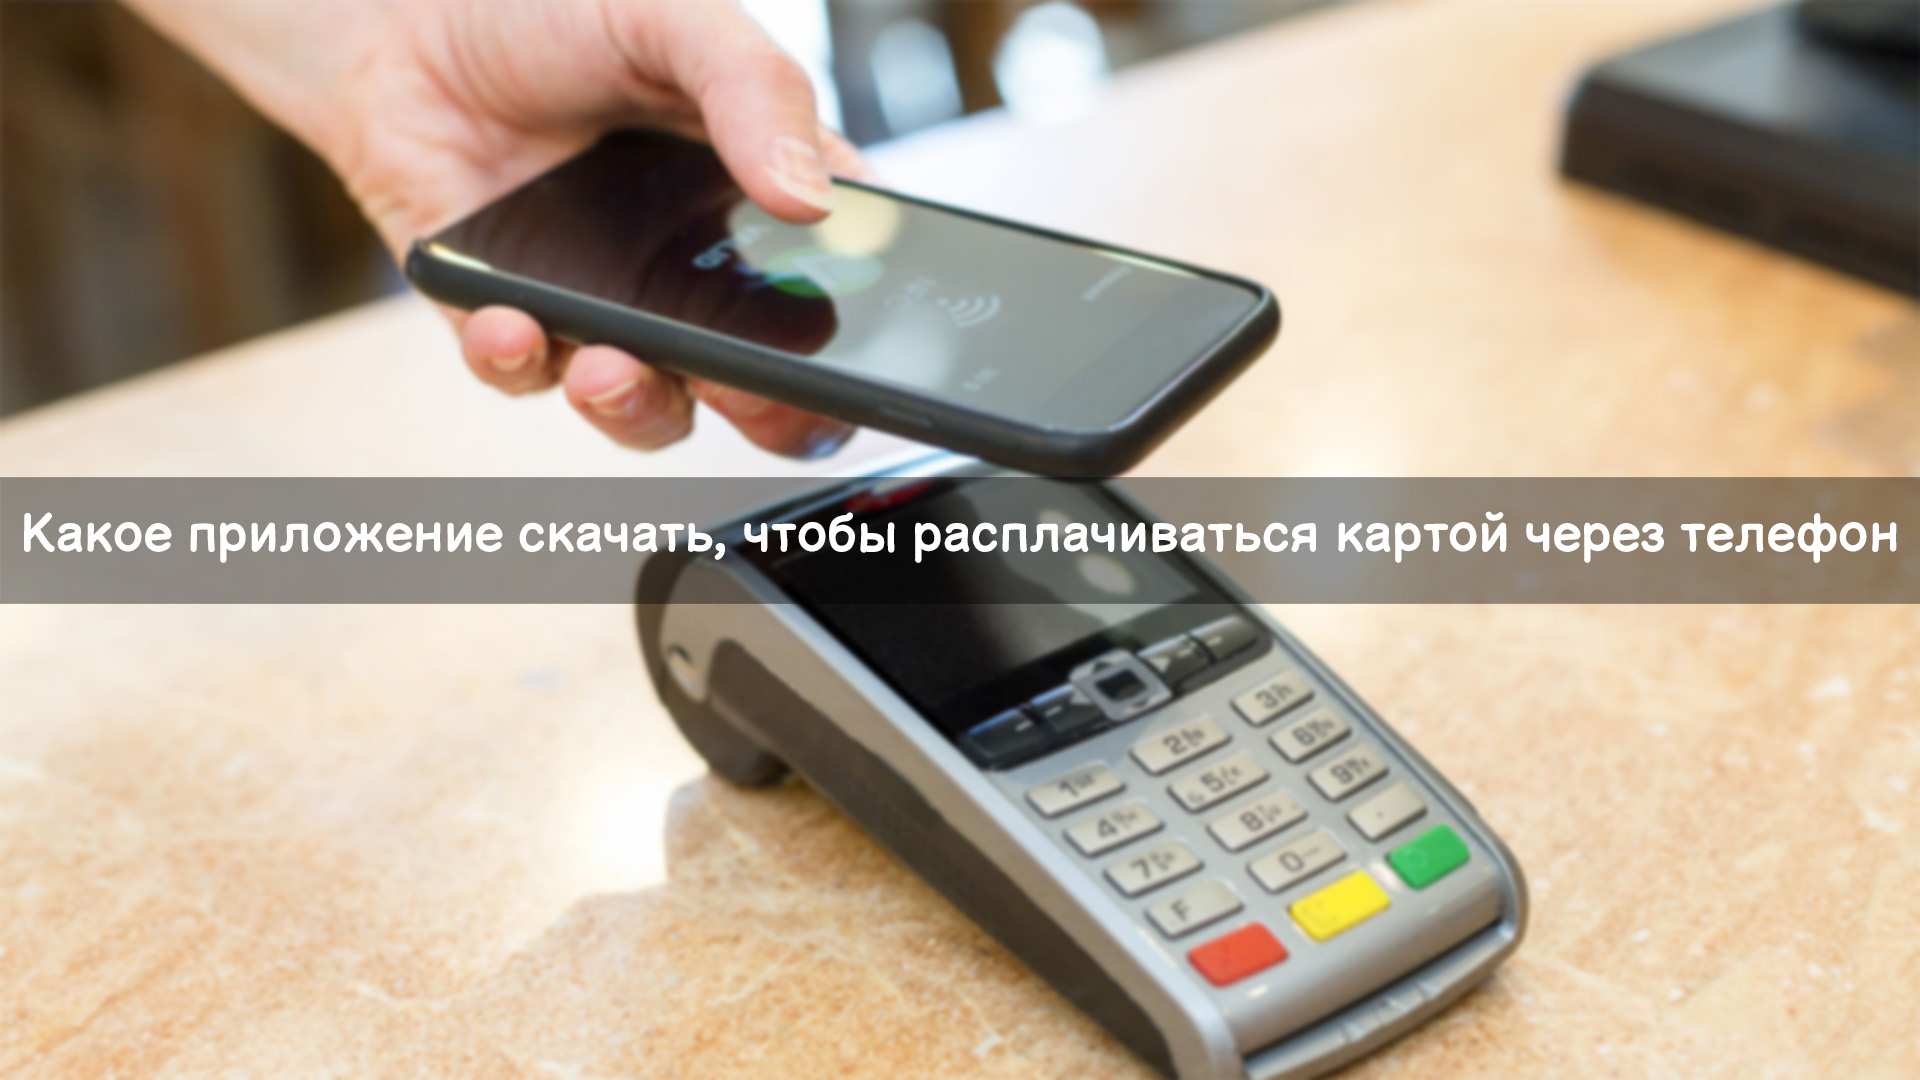 Как оплачивать телефоном вместо карты ВТБ андроид - варианты